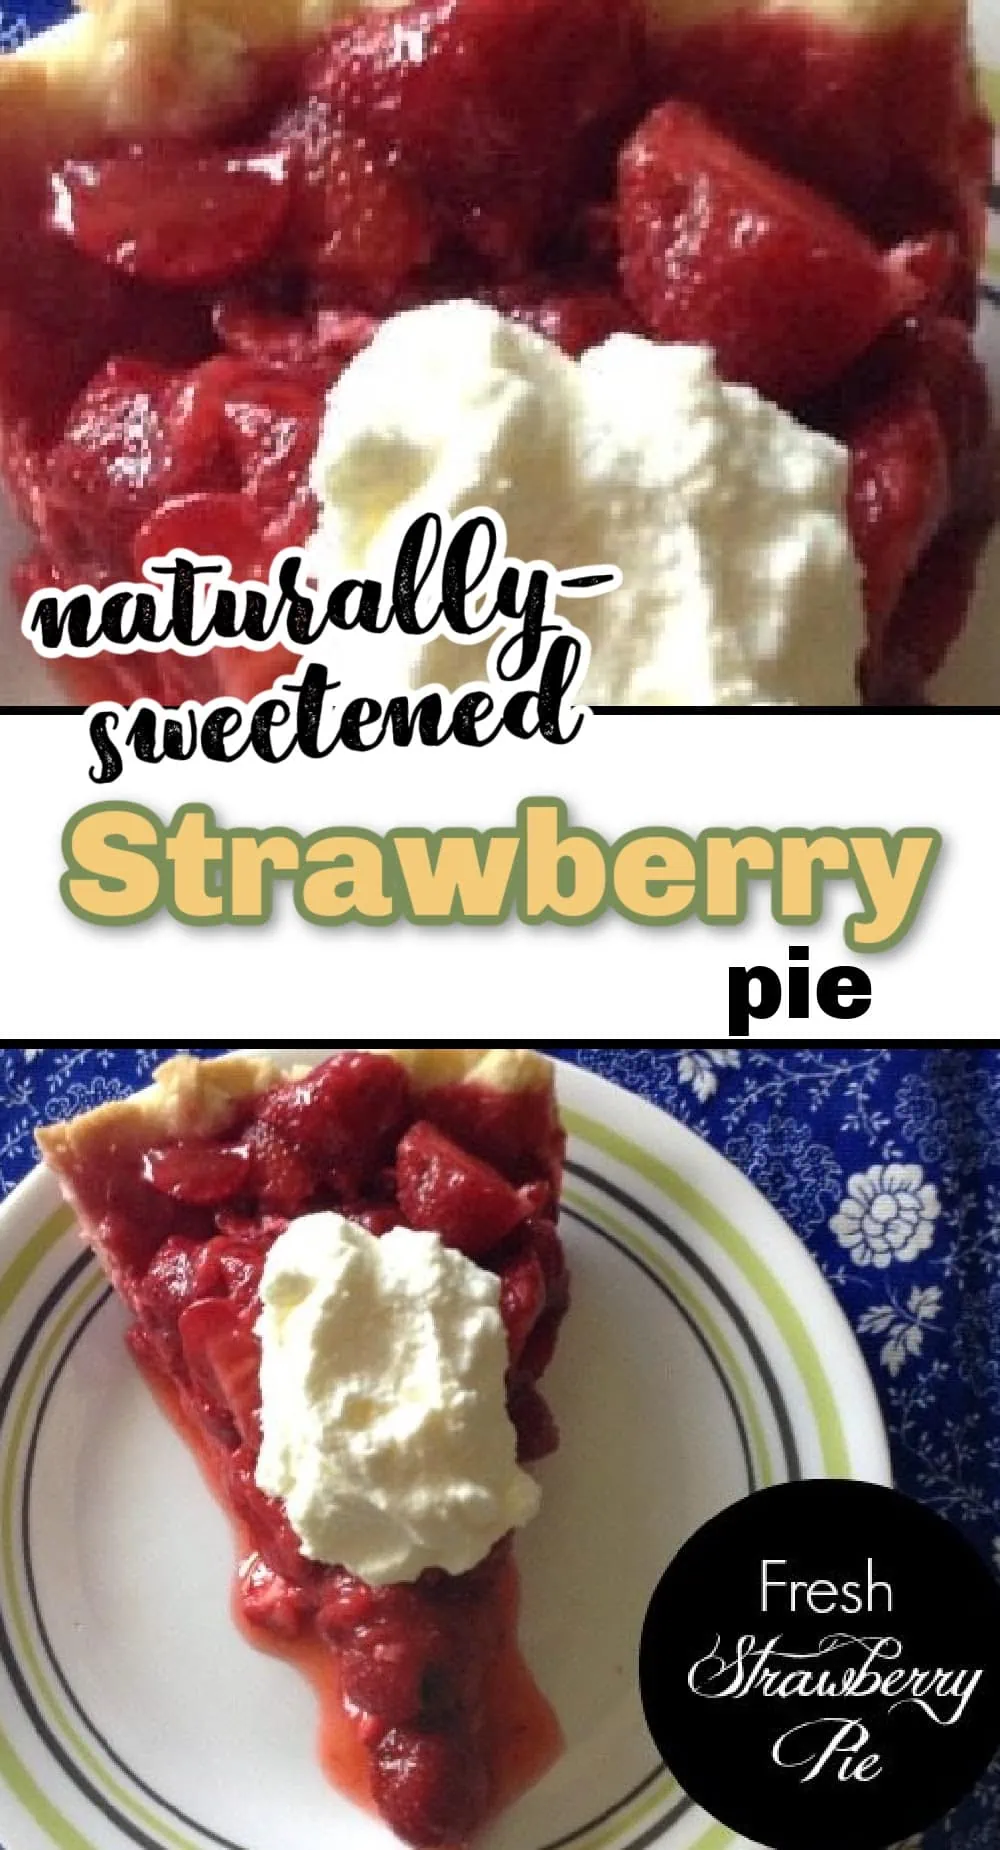 A close up of a strawberry pie.